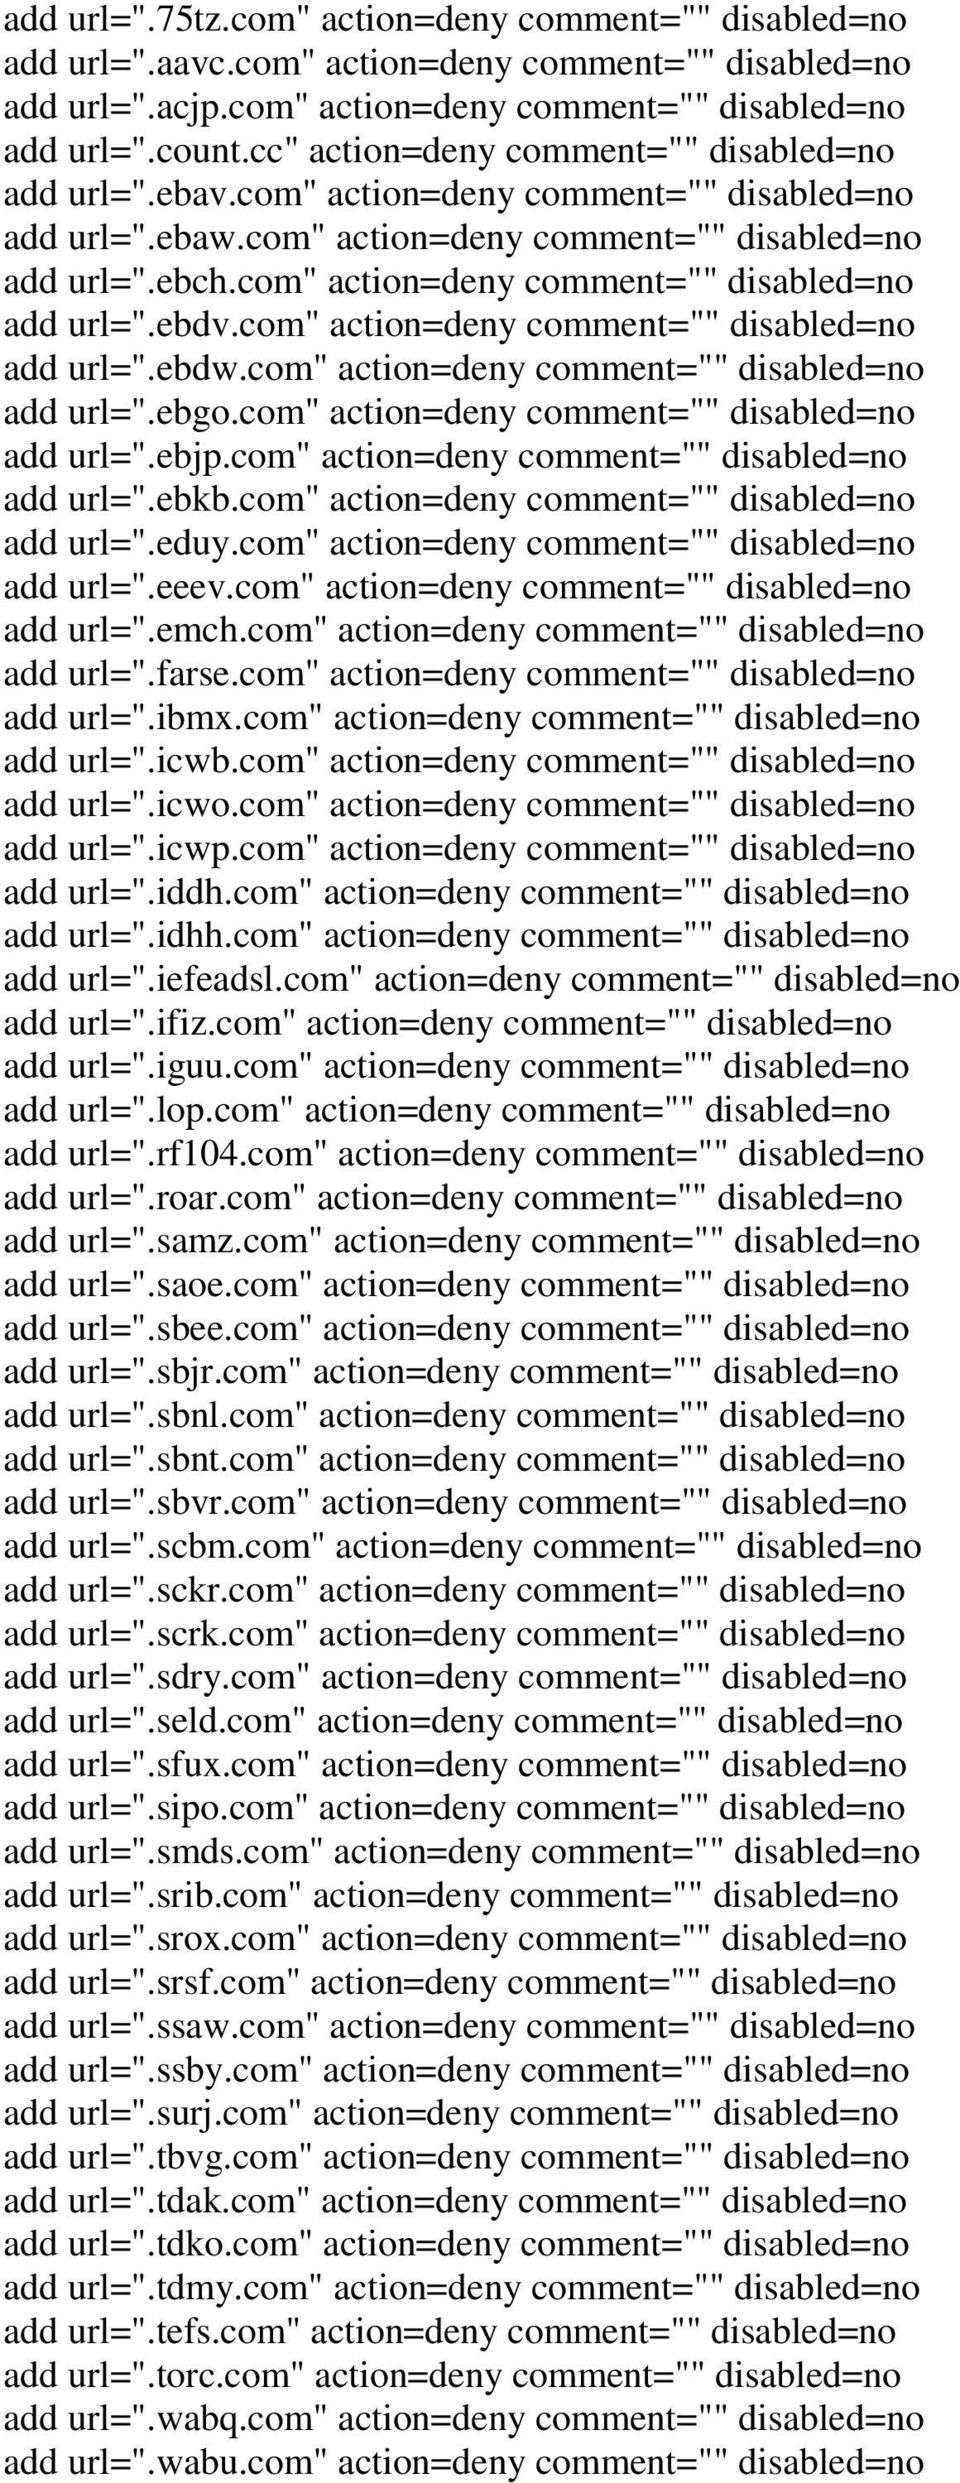 com" action=deny comment="" add url=".ebgo.com" action=deny comment="" add url=".ebjp.com" action=deny comment="" add url=".ebkb.com" action=deny comment="" add url=".eduy.